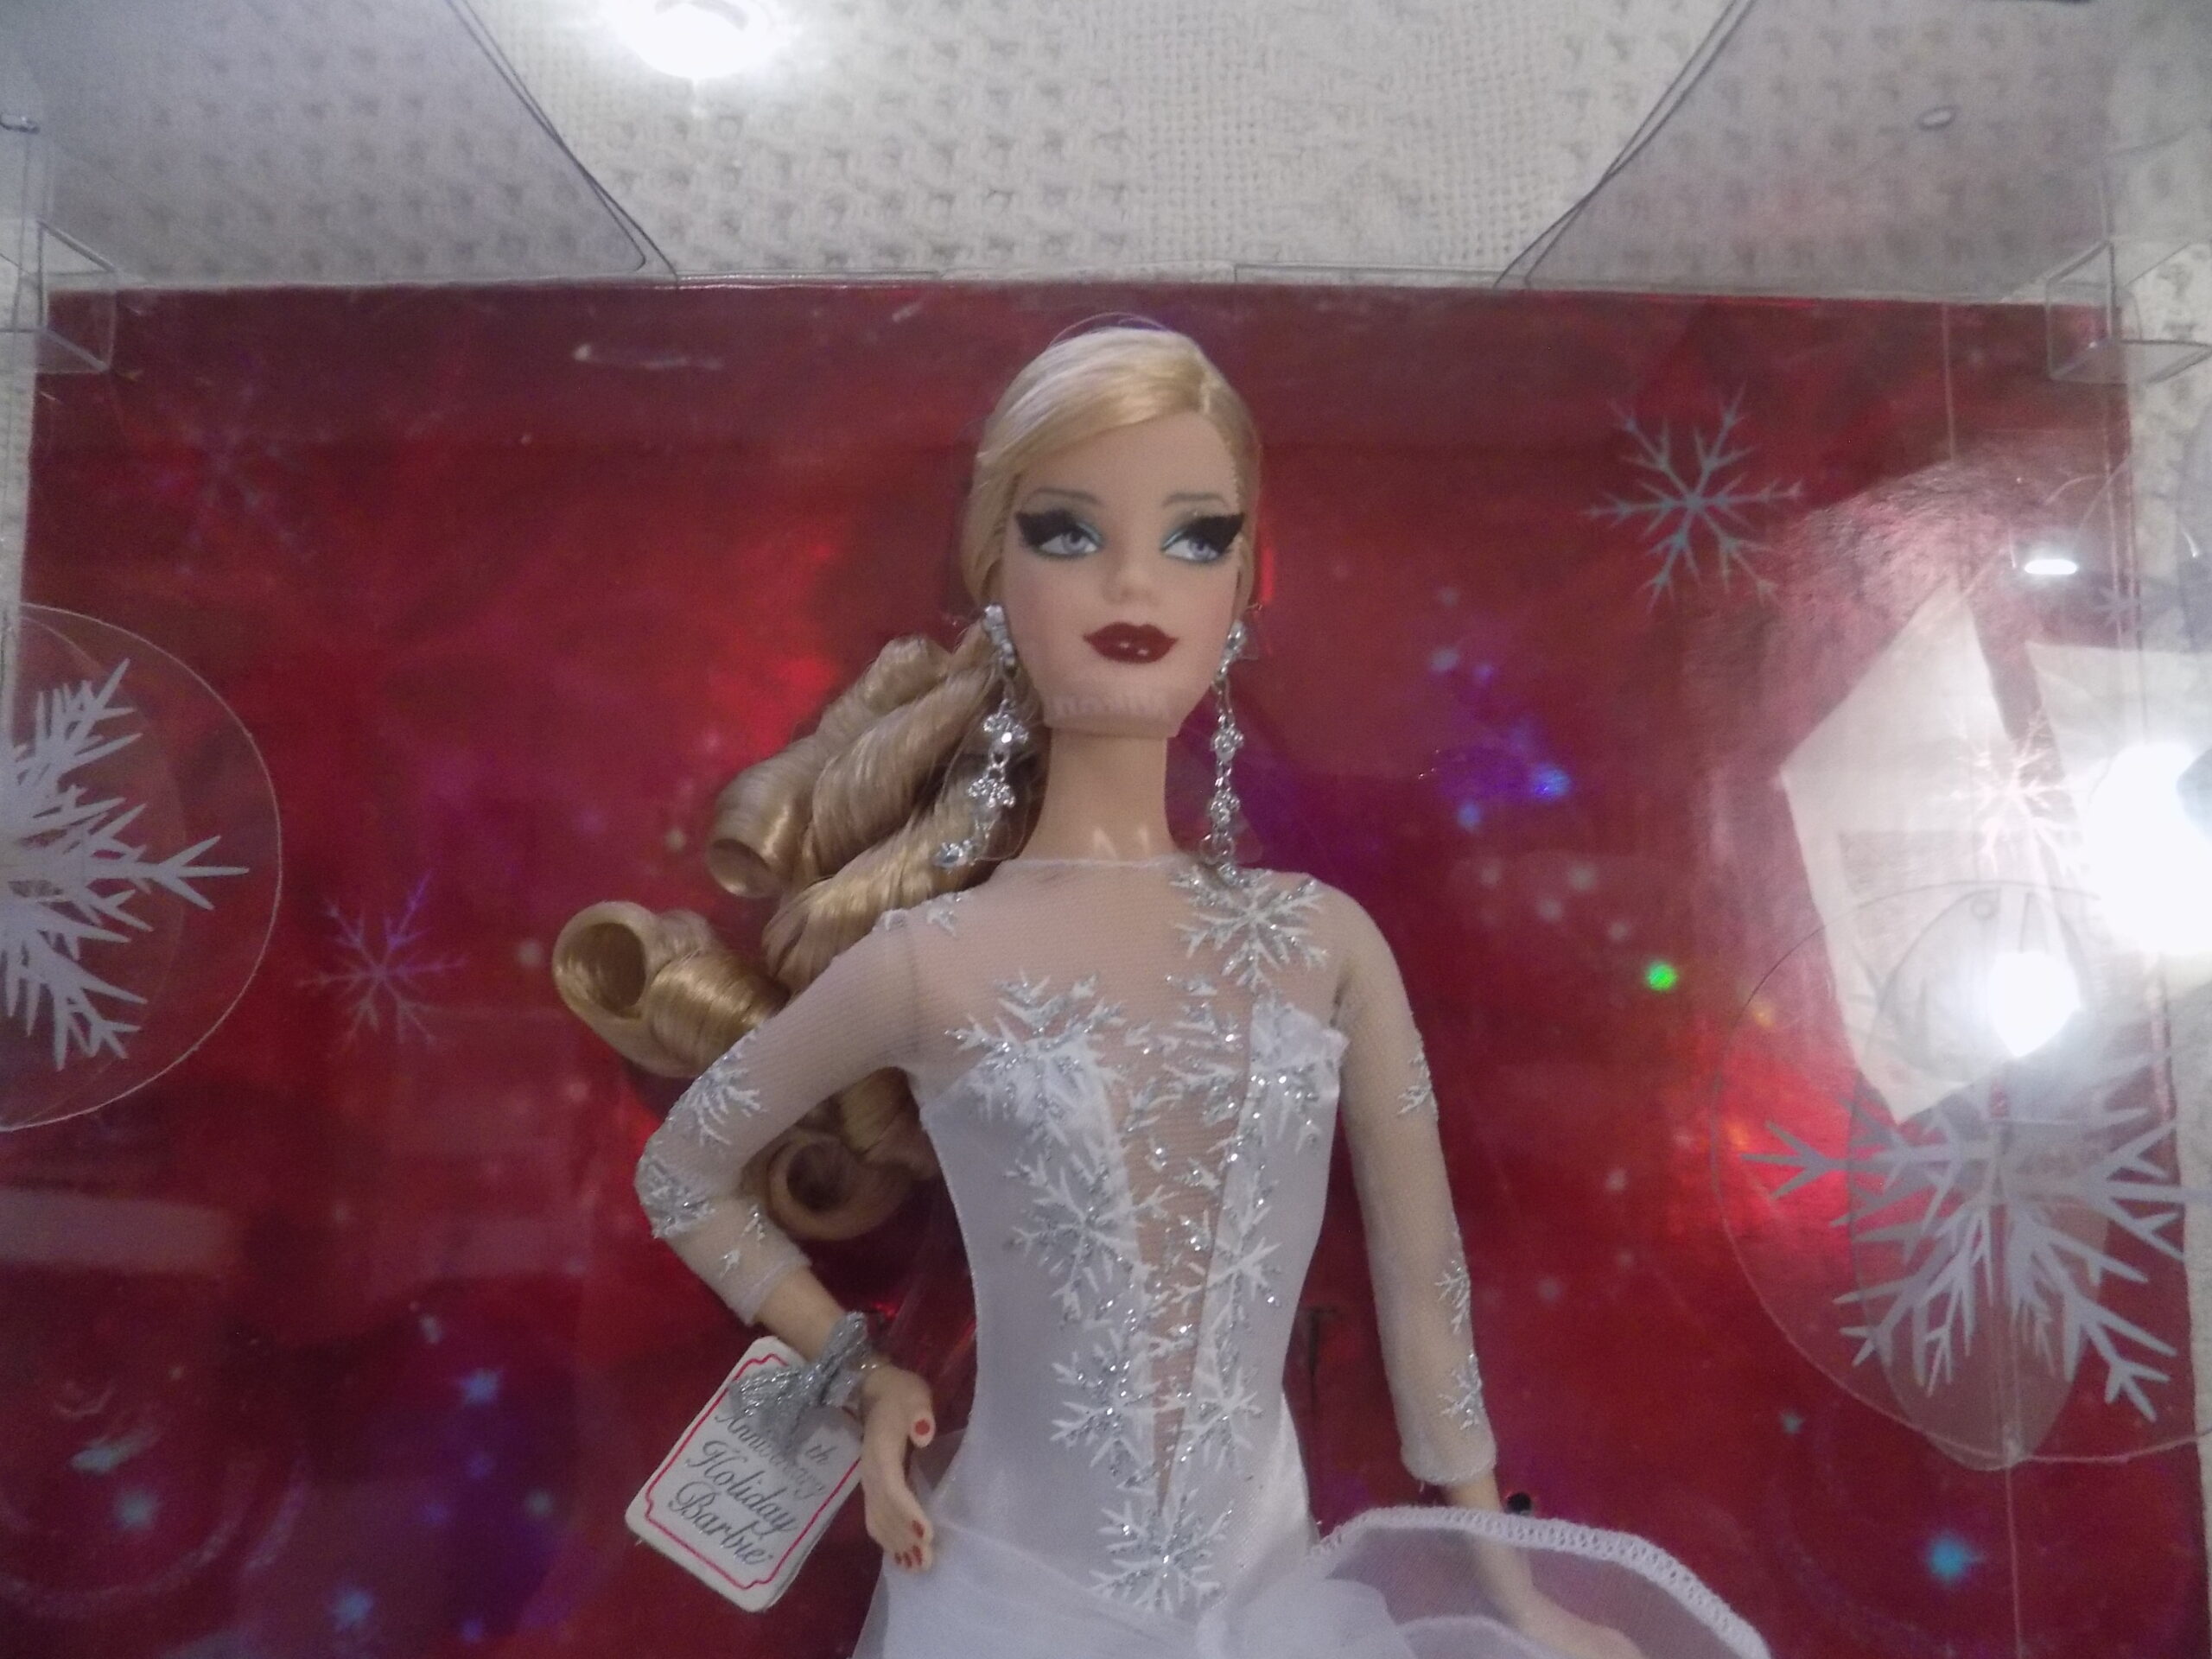 2008 Holiday Barbie Celebrating 20 Years of Holidays - Aunt JoJo's